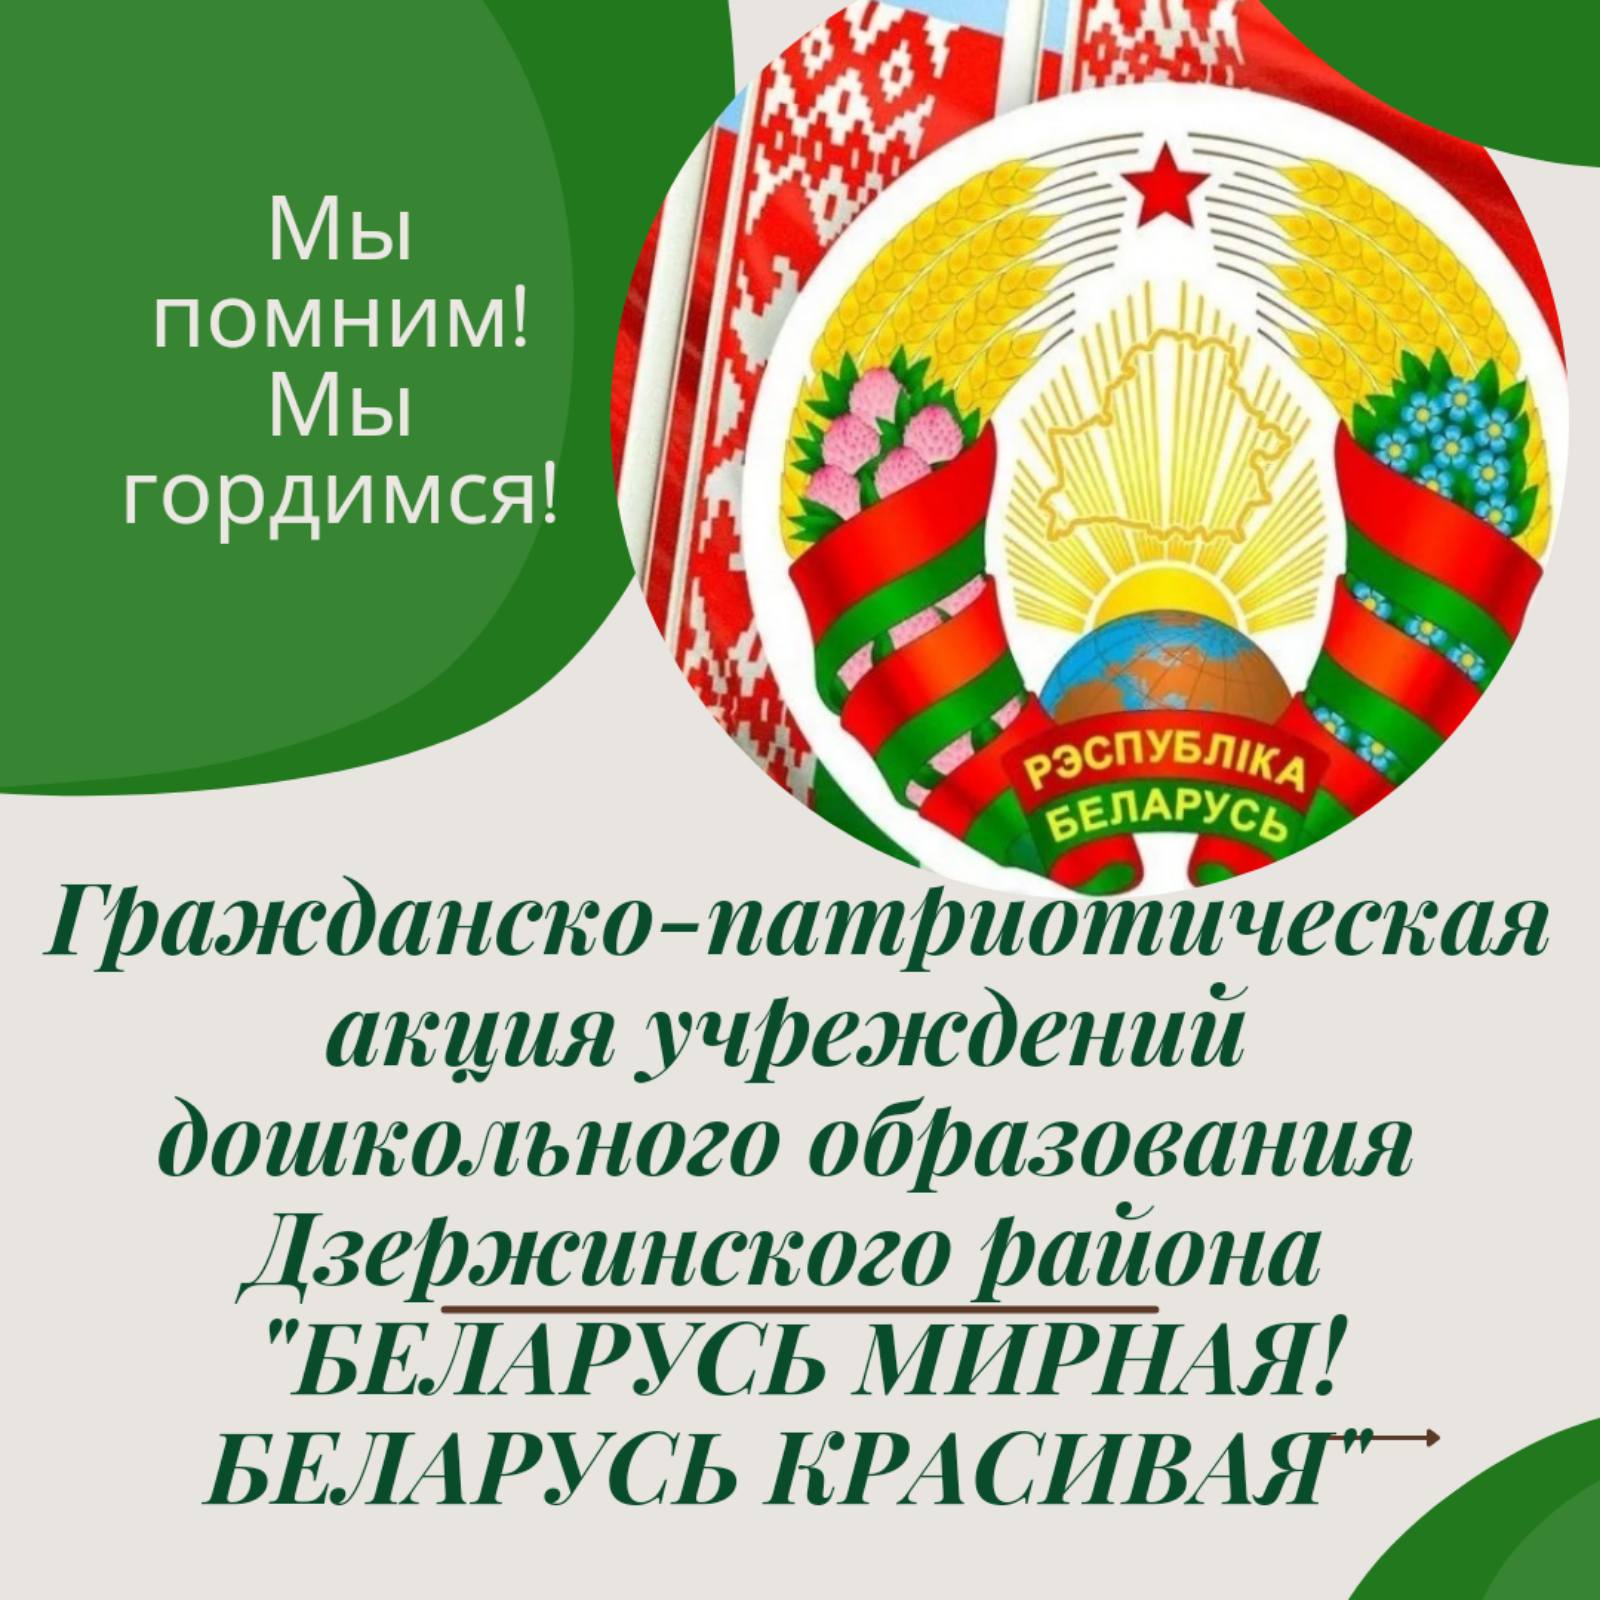 Марафон гражданско - патриотических акций ко Дню Независимости Республики Беларусь 